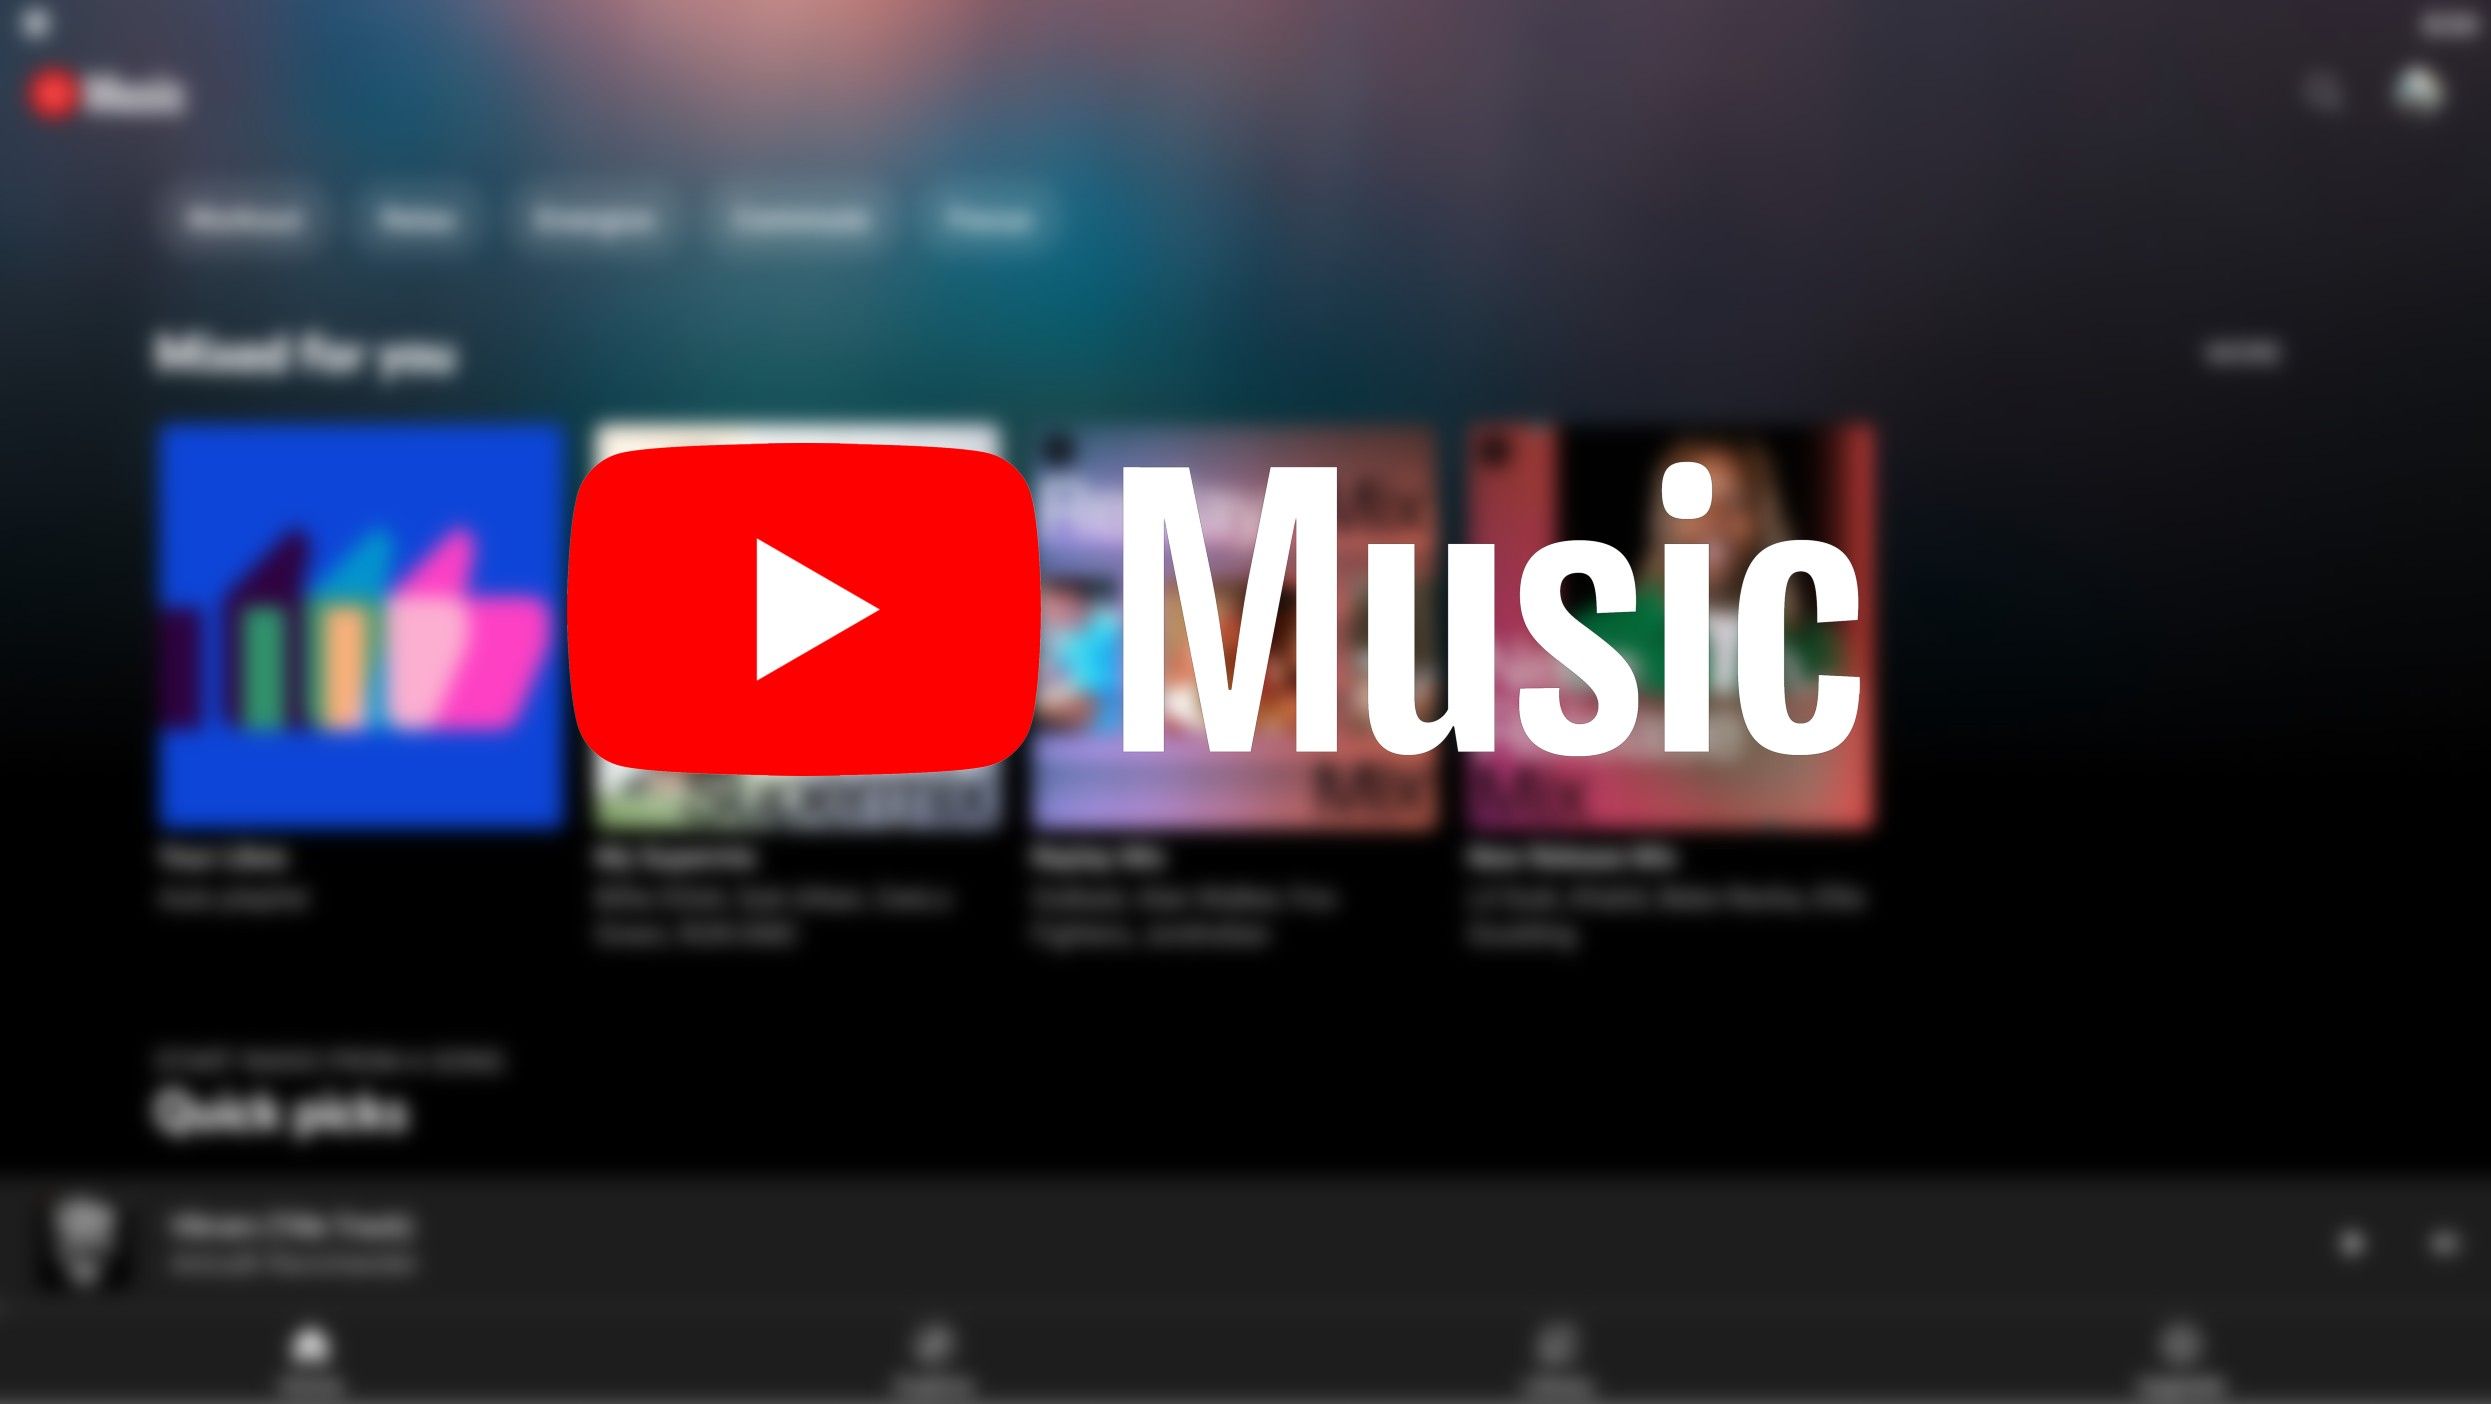 O logotipo do YouTube Music contra uma imagem desfocada do aplicativo do YouTube